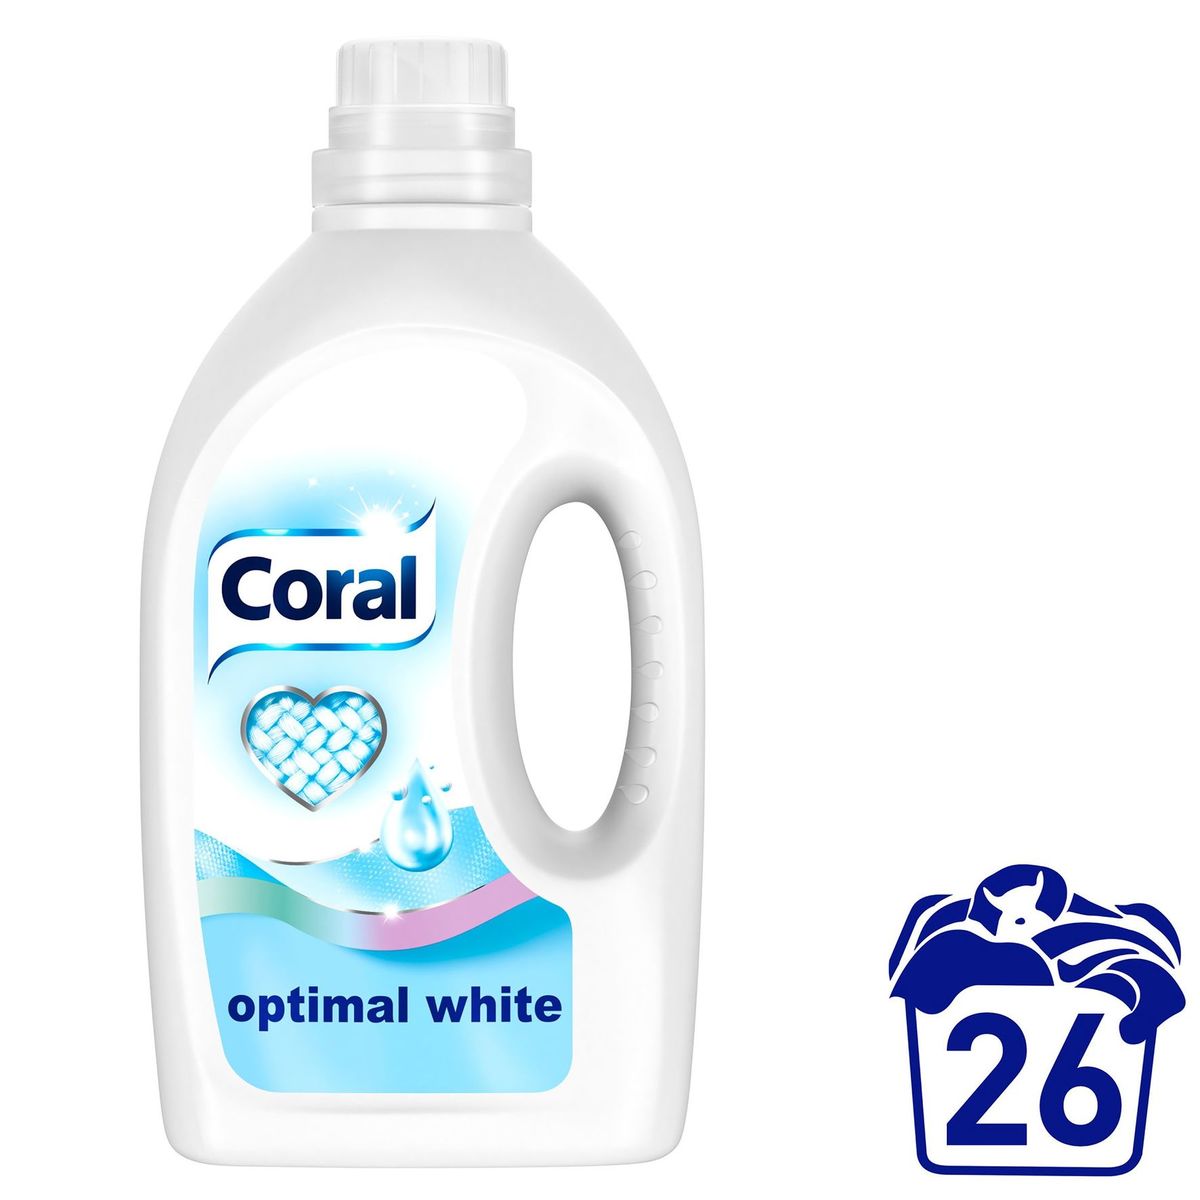 Coral Détergent Liquide pour Linge Blanc Optimal White 26 Lavages